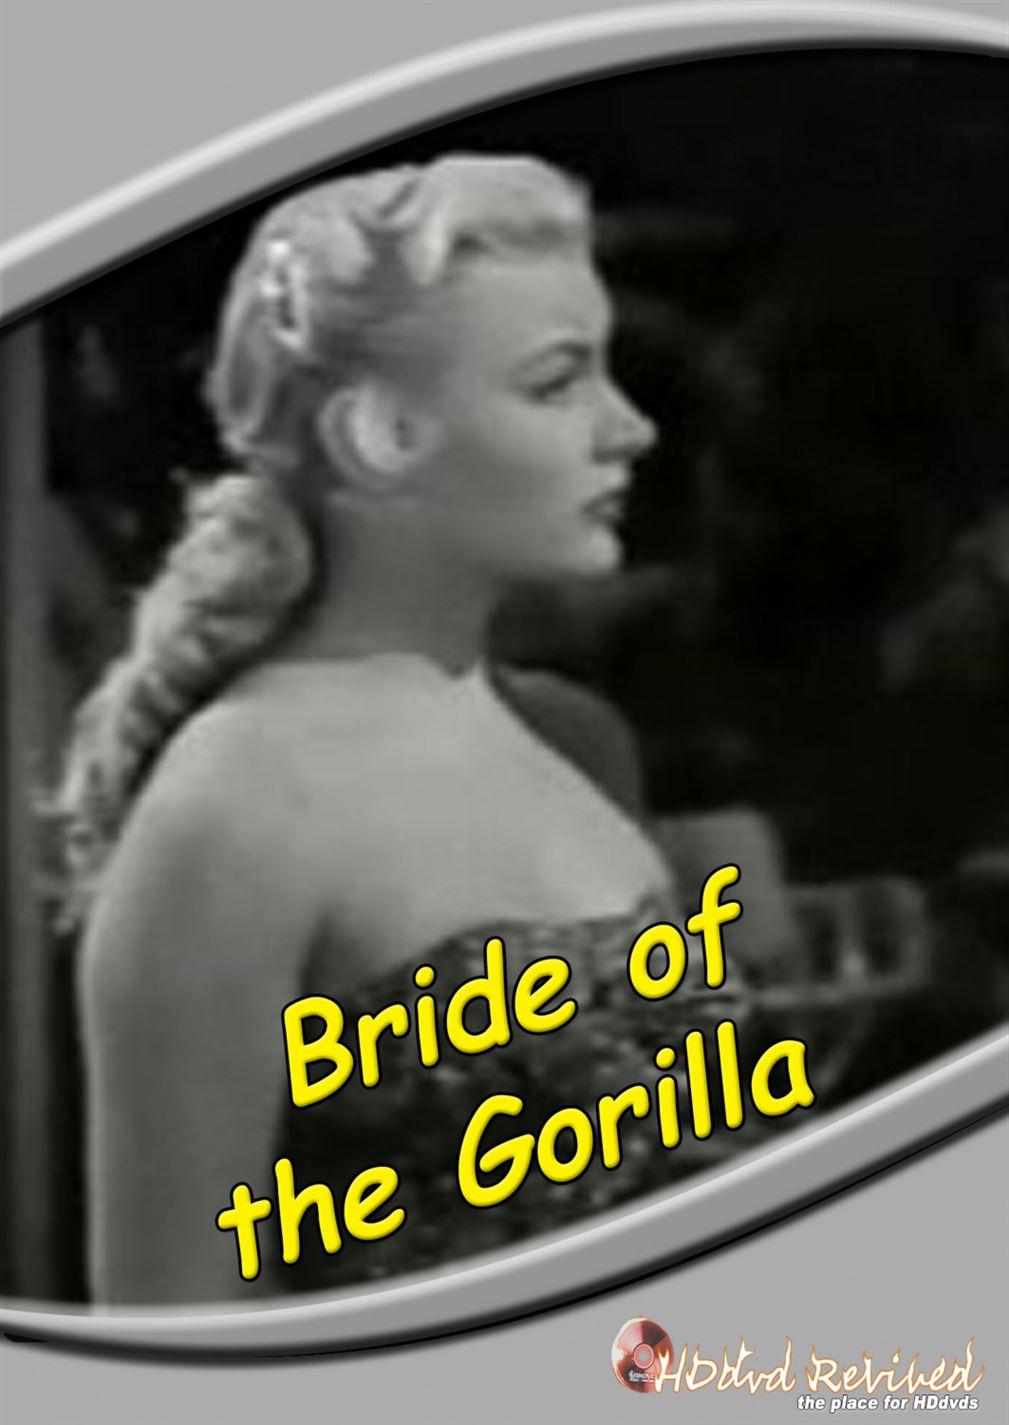 	Bride of the Gorilla (1951) Standard DVD (HDDVD-Revived) UK Seller